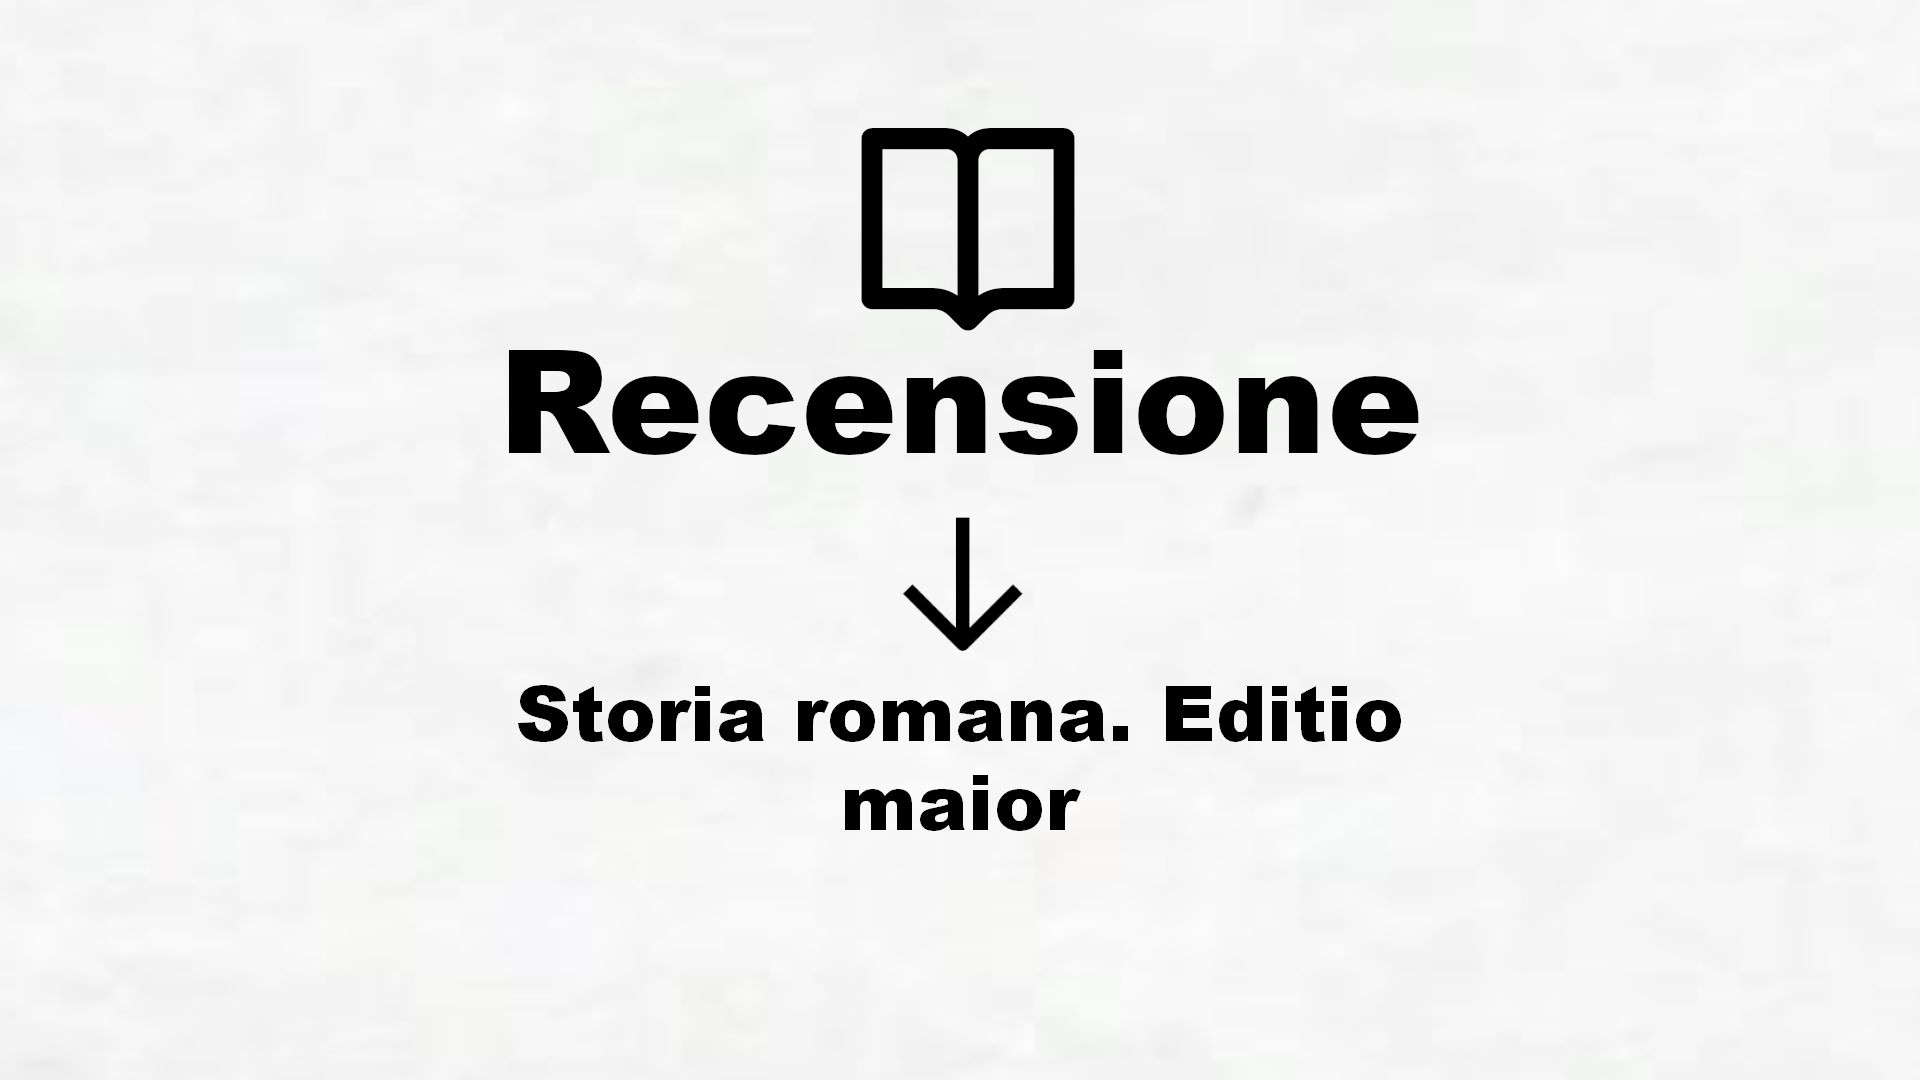 Storia romana. Editio maior – Recensione Libro